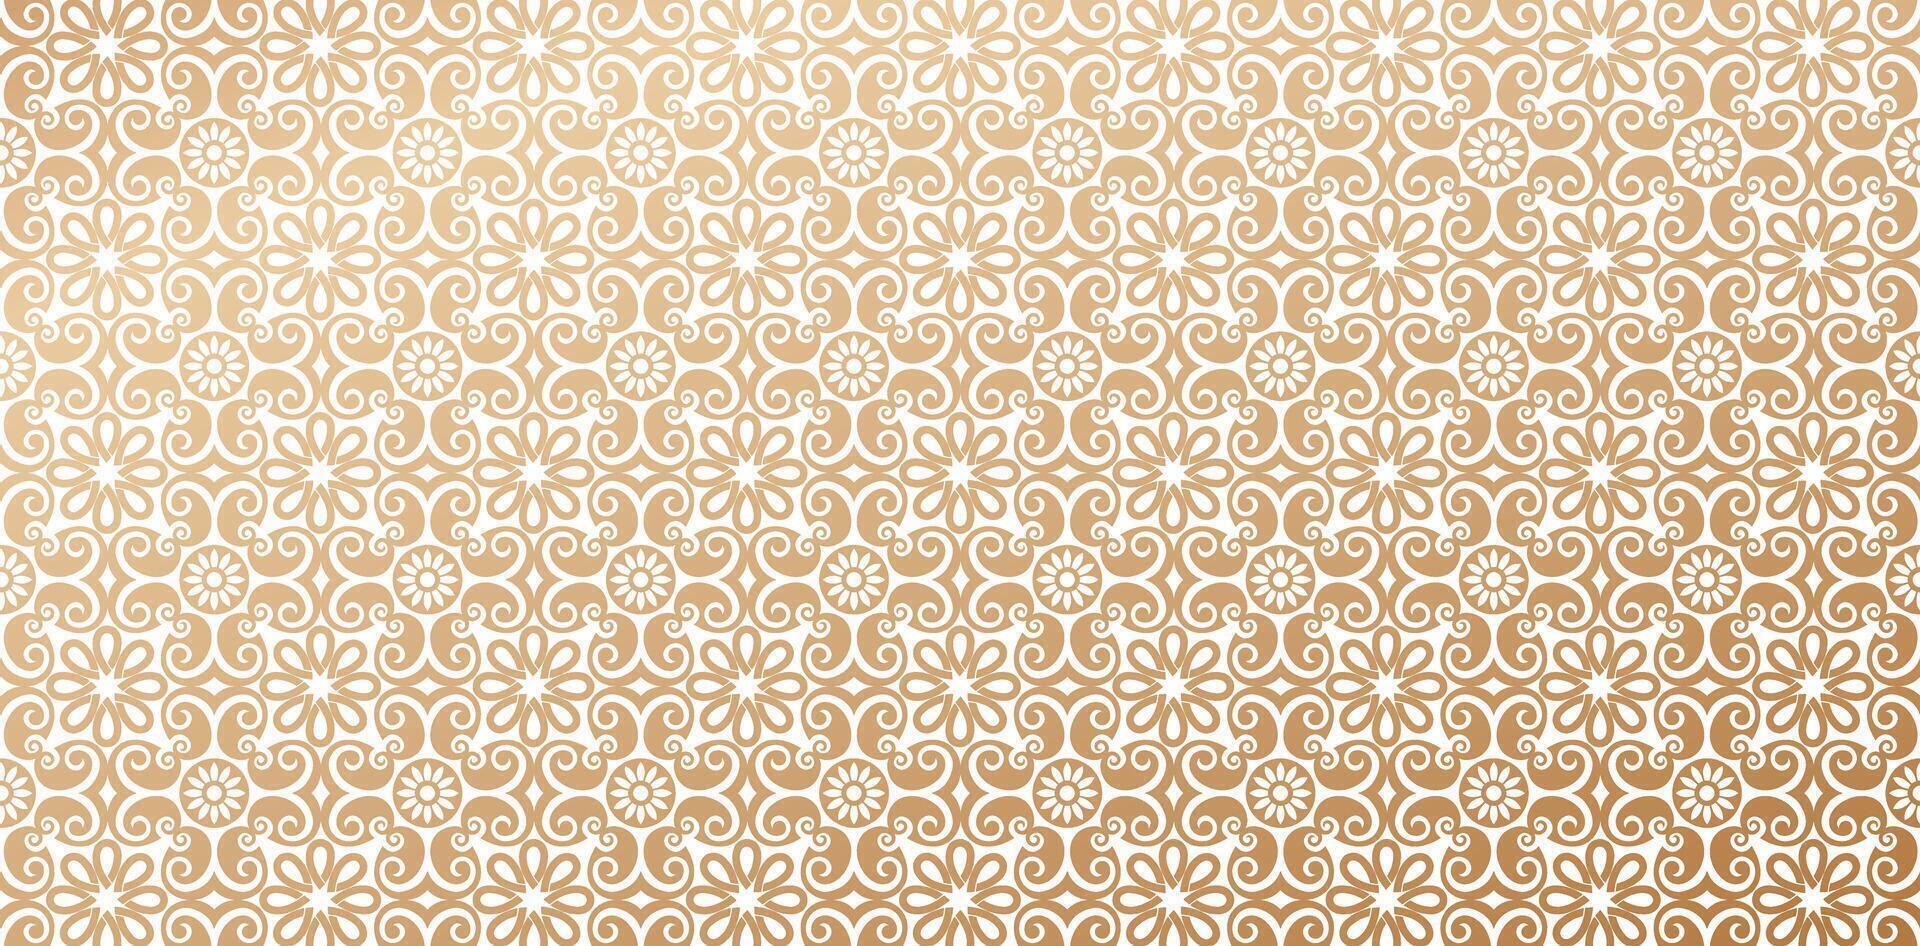 padronizar islâmico estilos enfeite ouro cores damasco papel de parede vintage fundo para elegante moderno papel de parede ou têxteis, livros cobrir, digital interfaces, impressão desenhos modelo materiais vetor